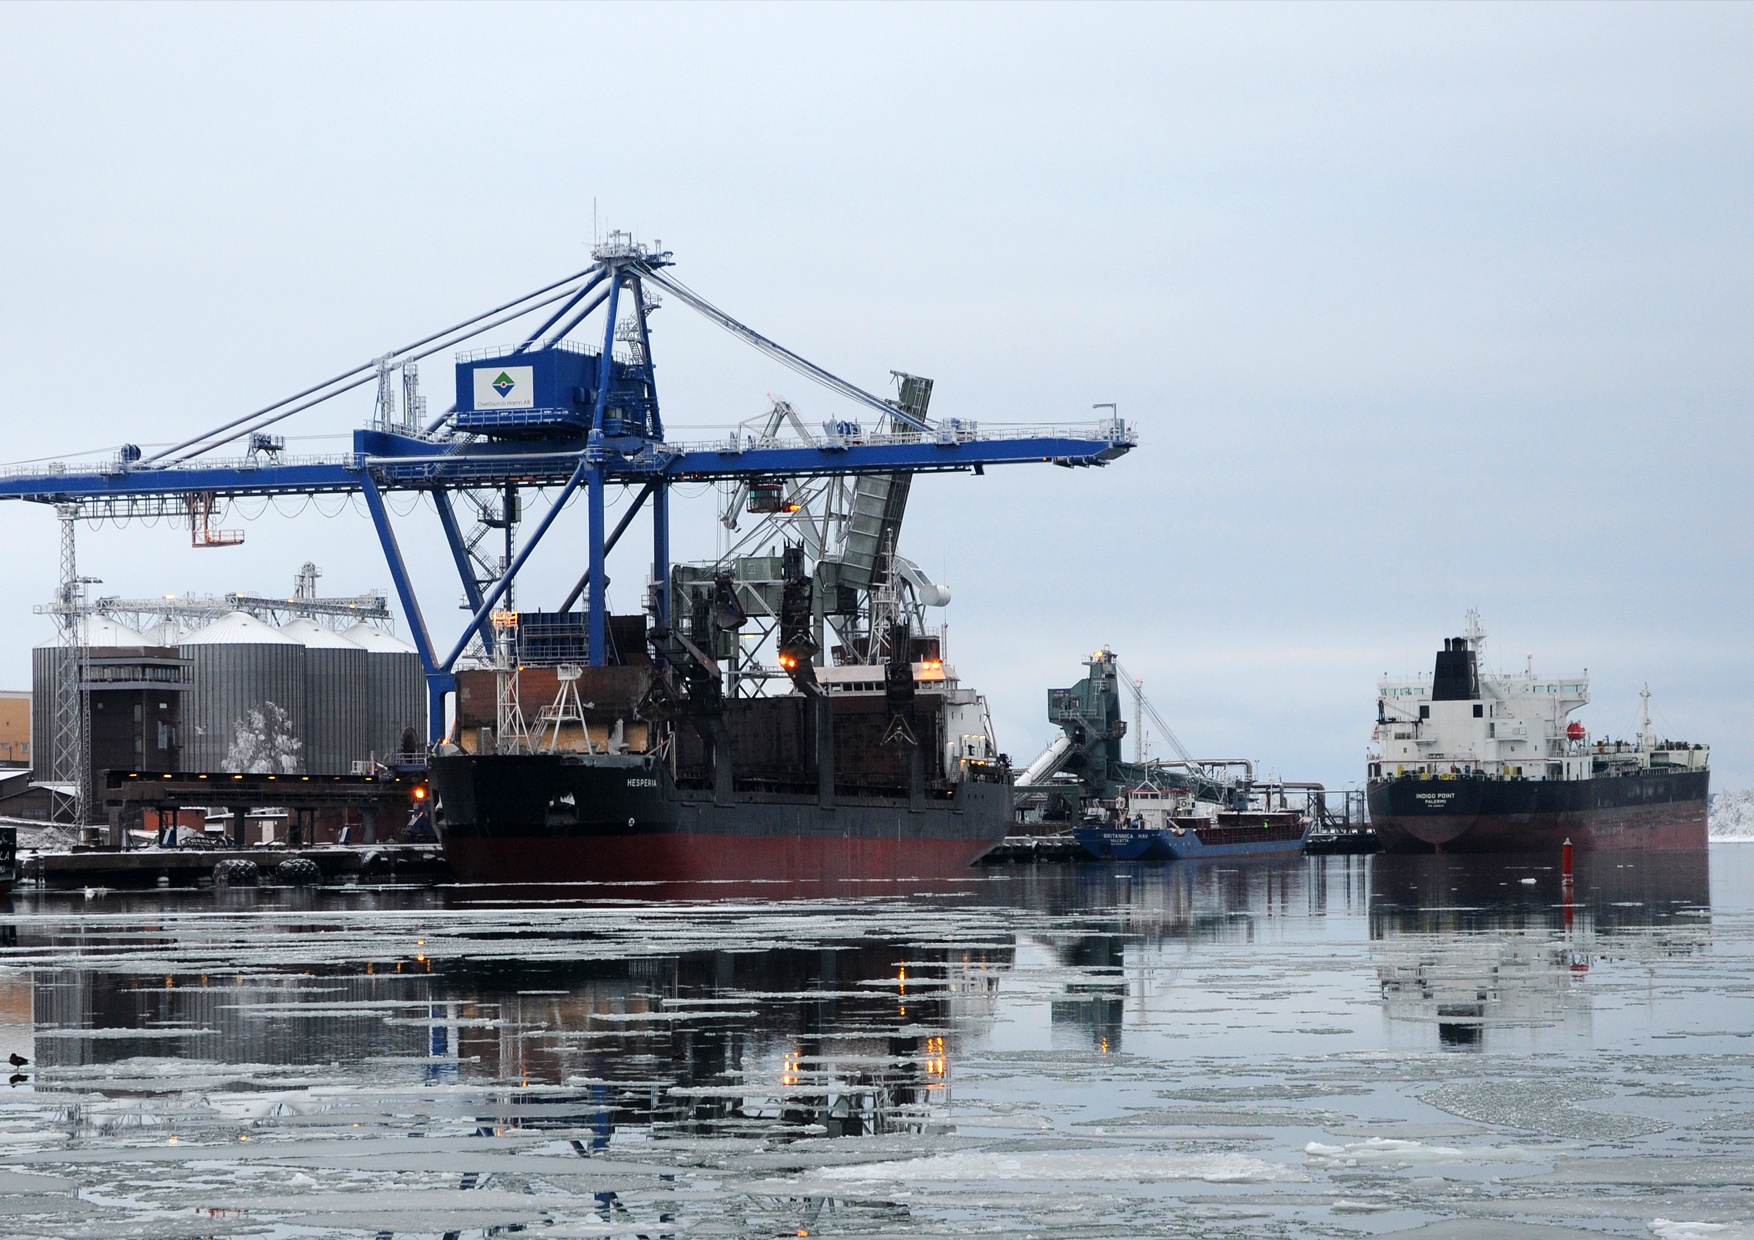 Oxelösunds hamn i januariväder. Bilden visar en blå kran och tre skepp vid kaj